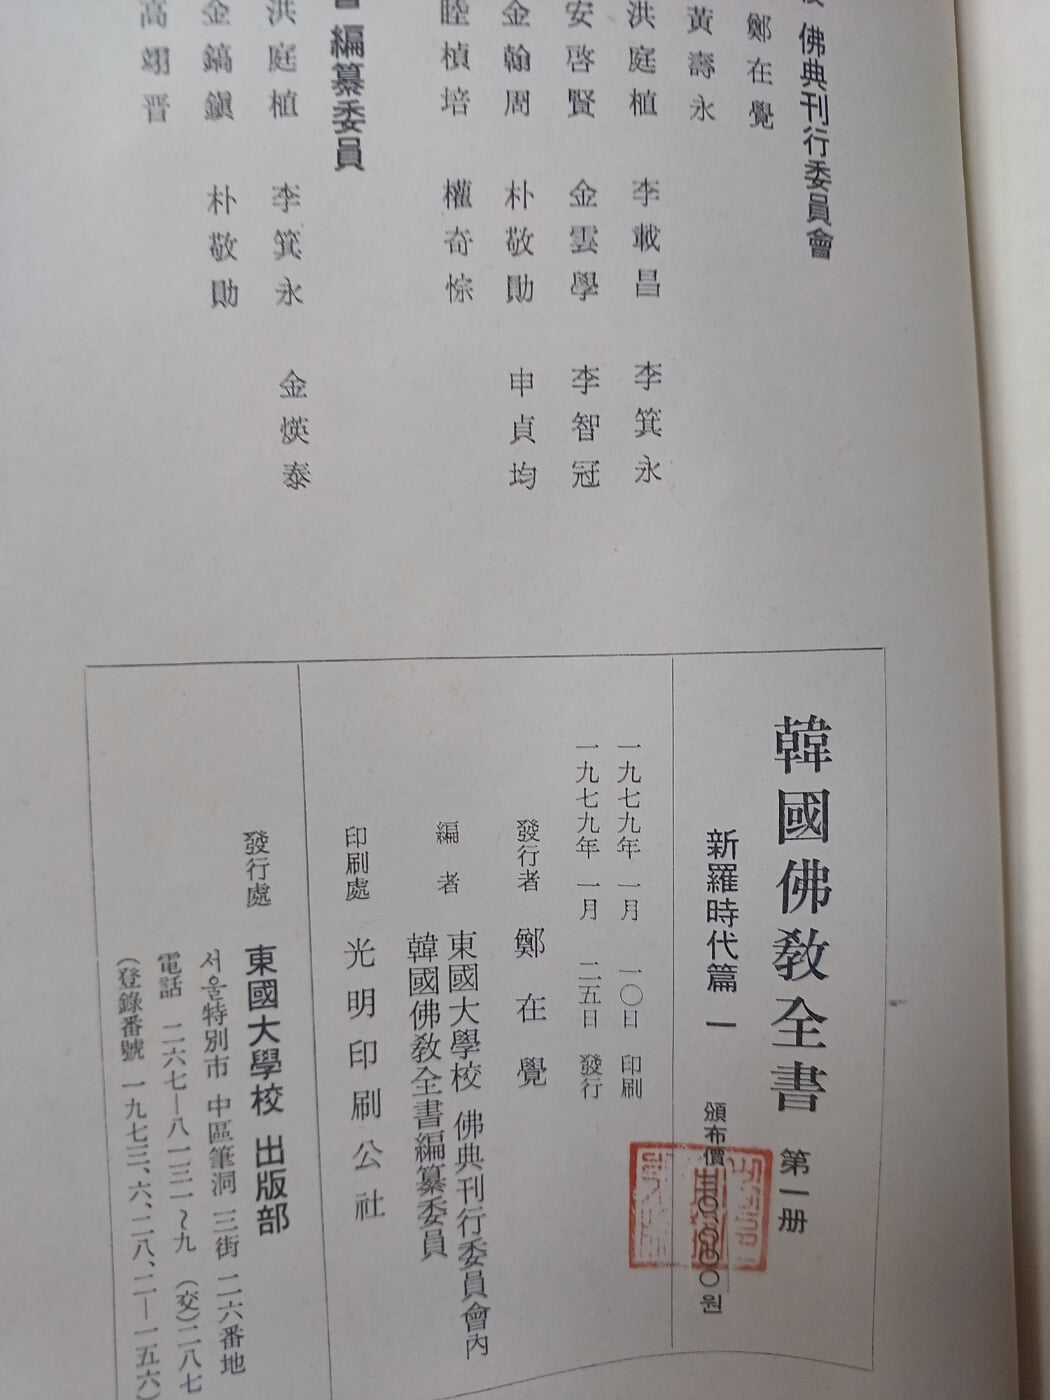 한국불교전서 제1책 신라시대편 초판본